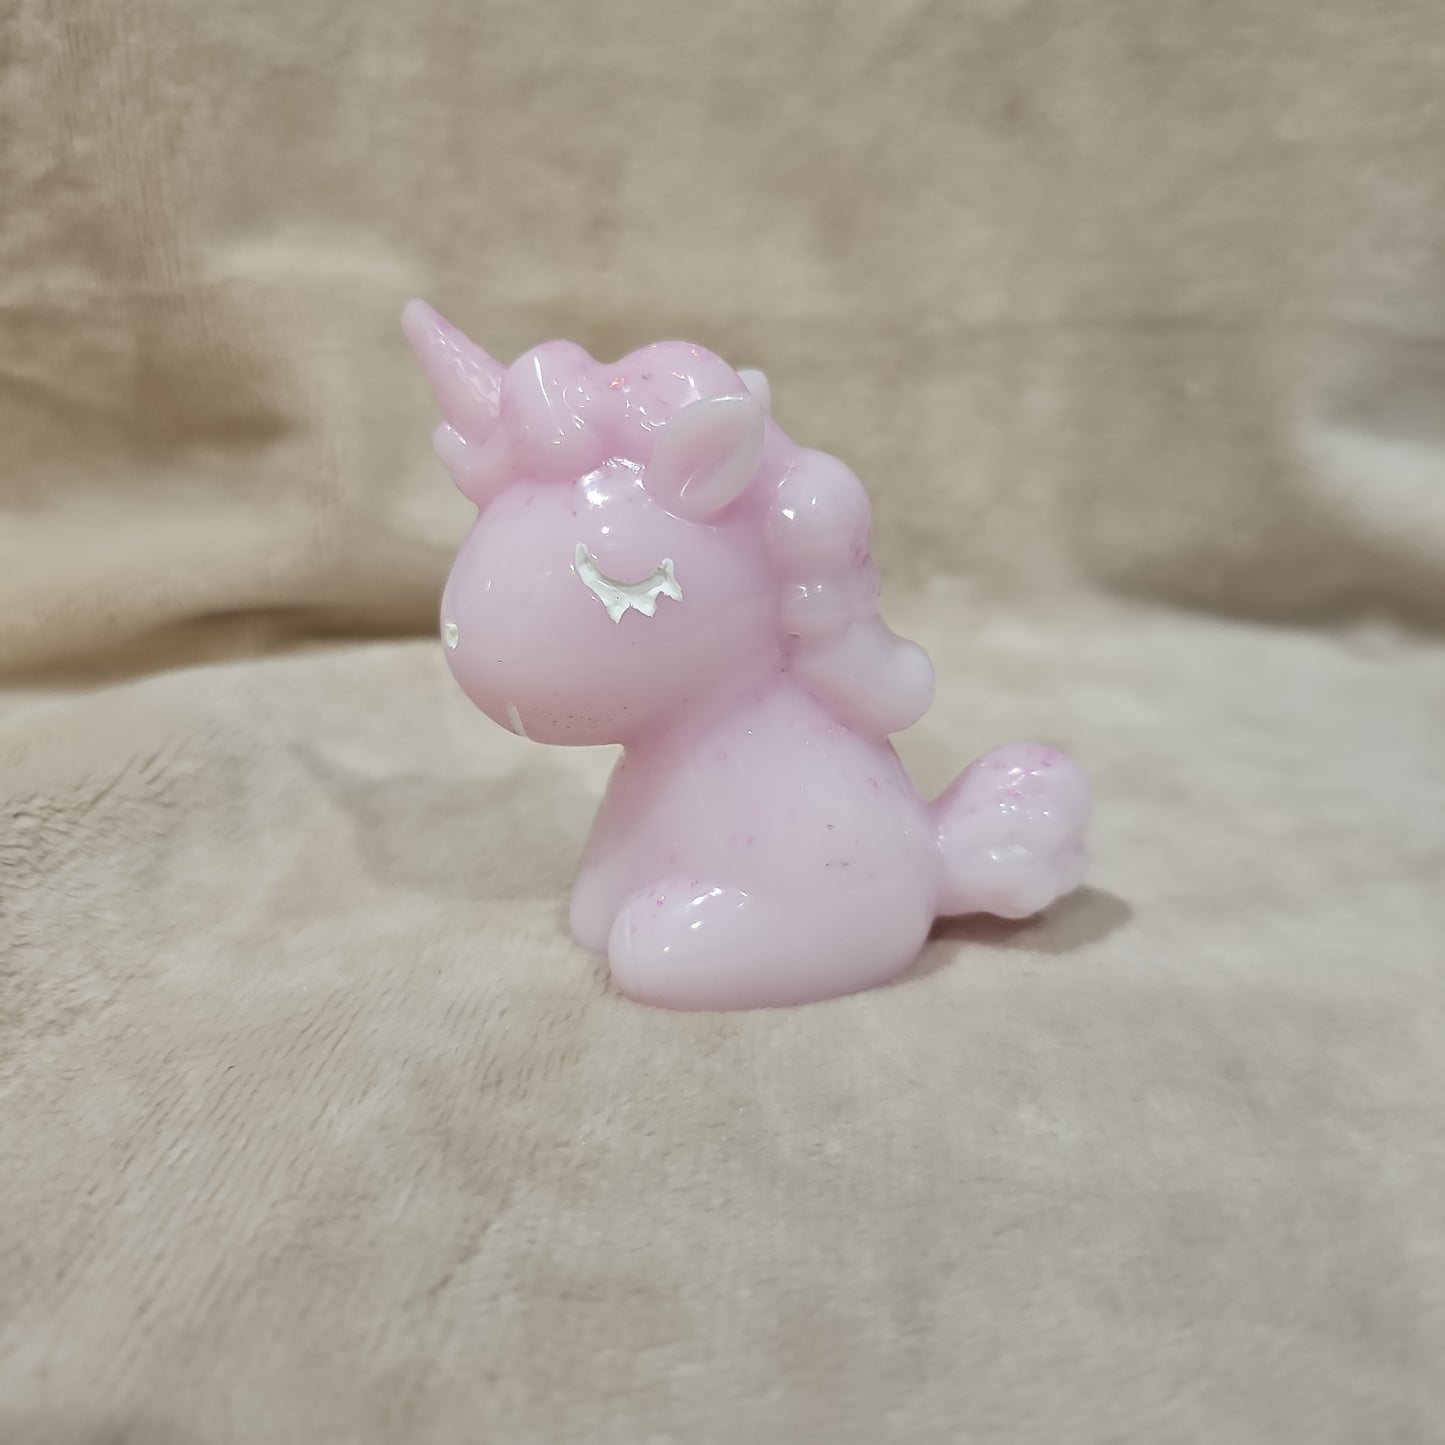 Figurine-Pink Unicorn